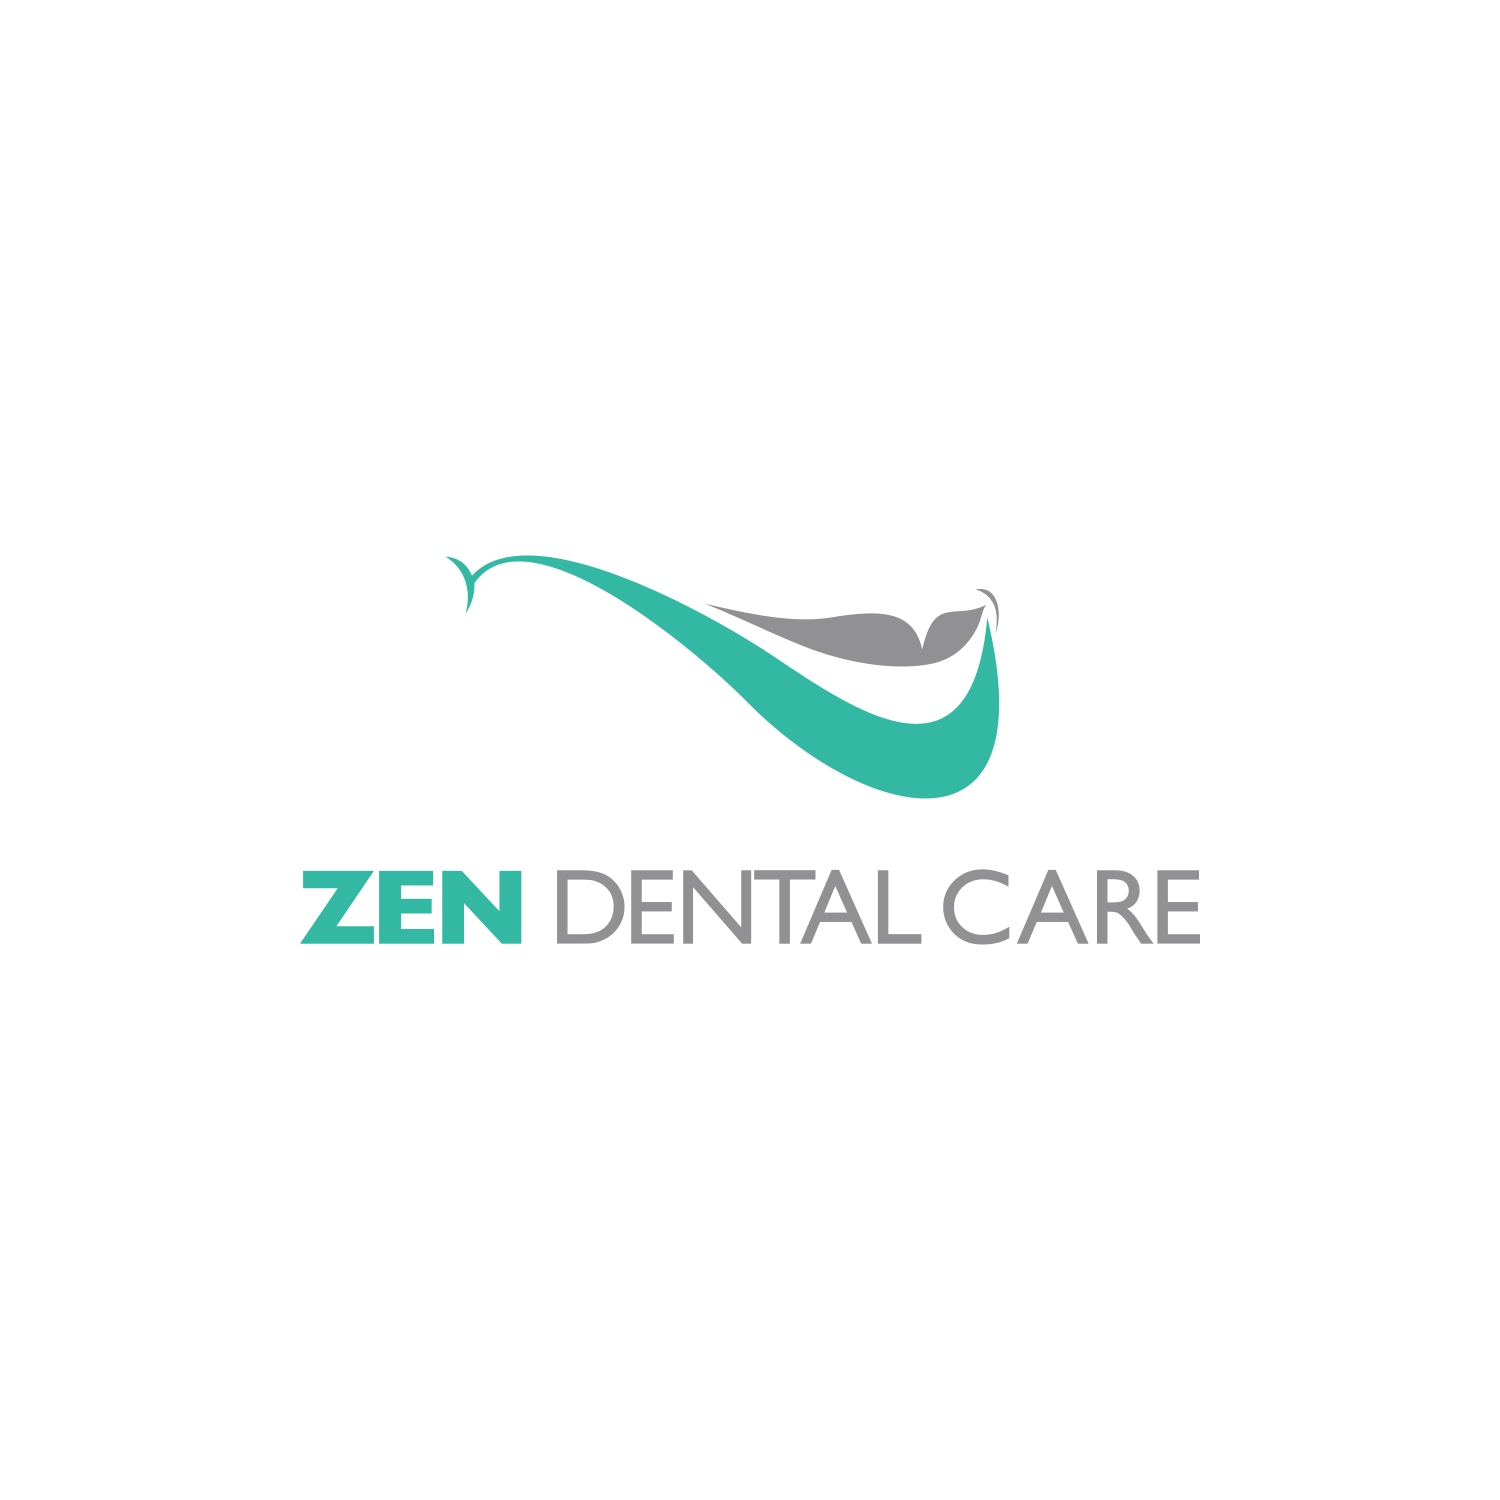 DQ Logo - Modern, Upmarket, Dental Logo Design for zen dental care by DQ ...